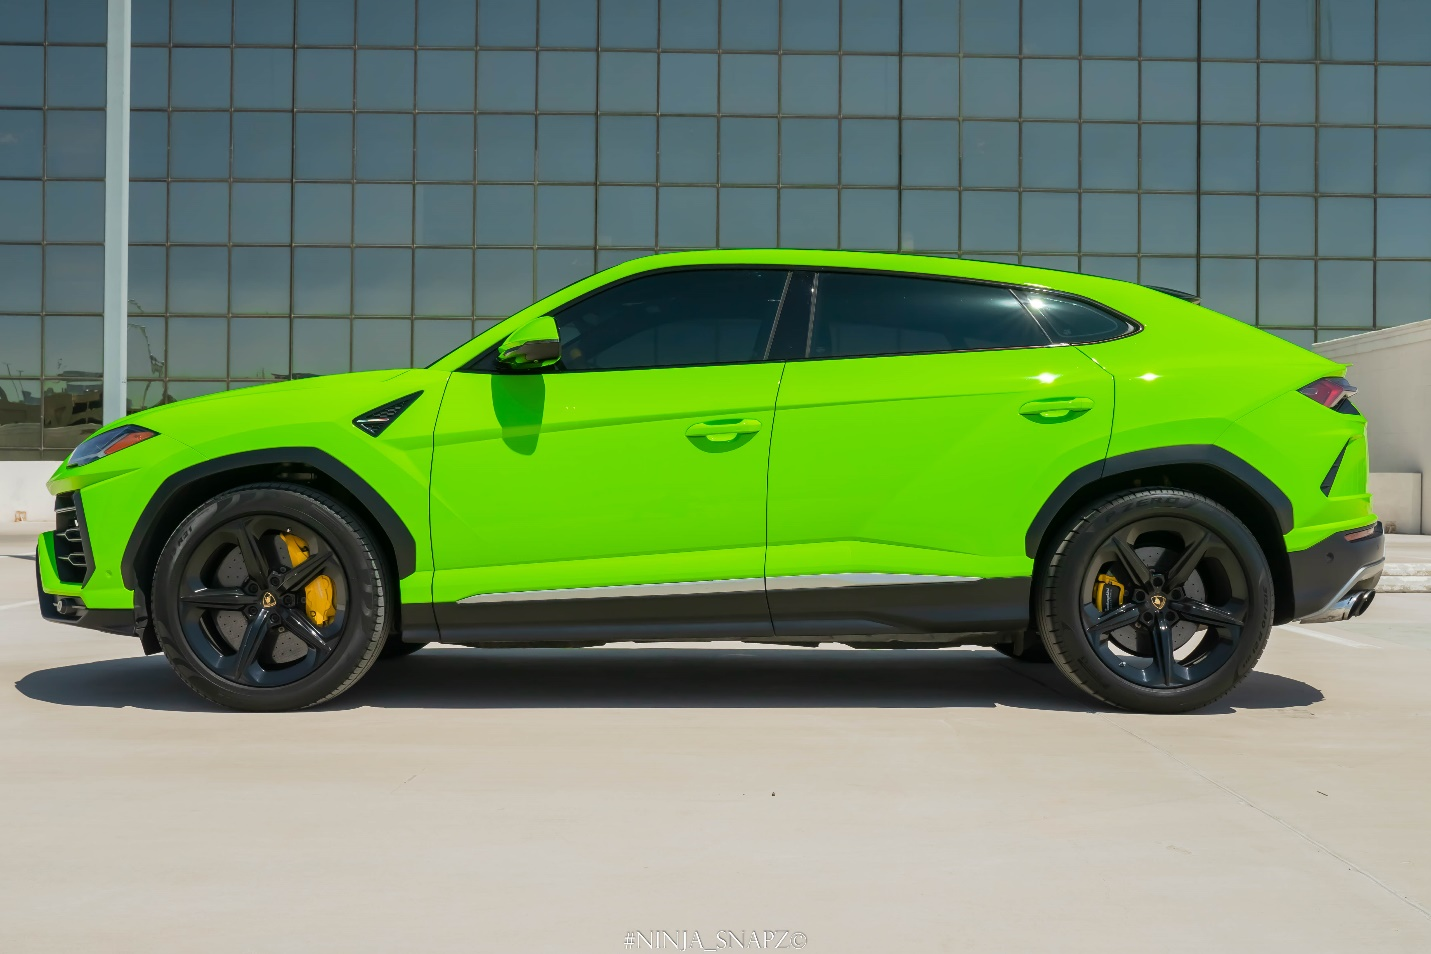 A green Lamborghini urus